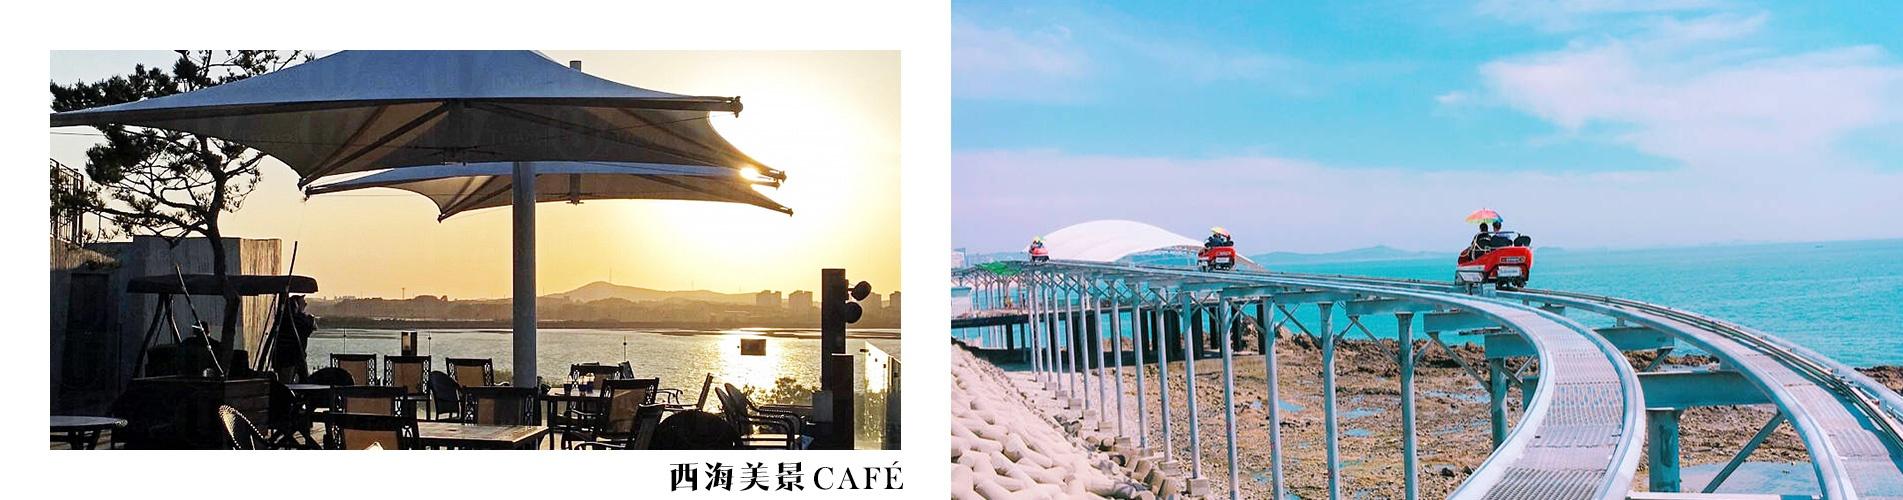 韓國1日遊·暢遊五色星光夜燈節 X 天空鐵路單車 X 西海美景CAFÉ下午茶